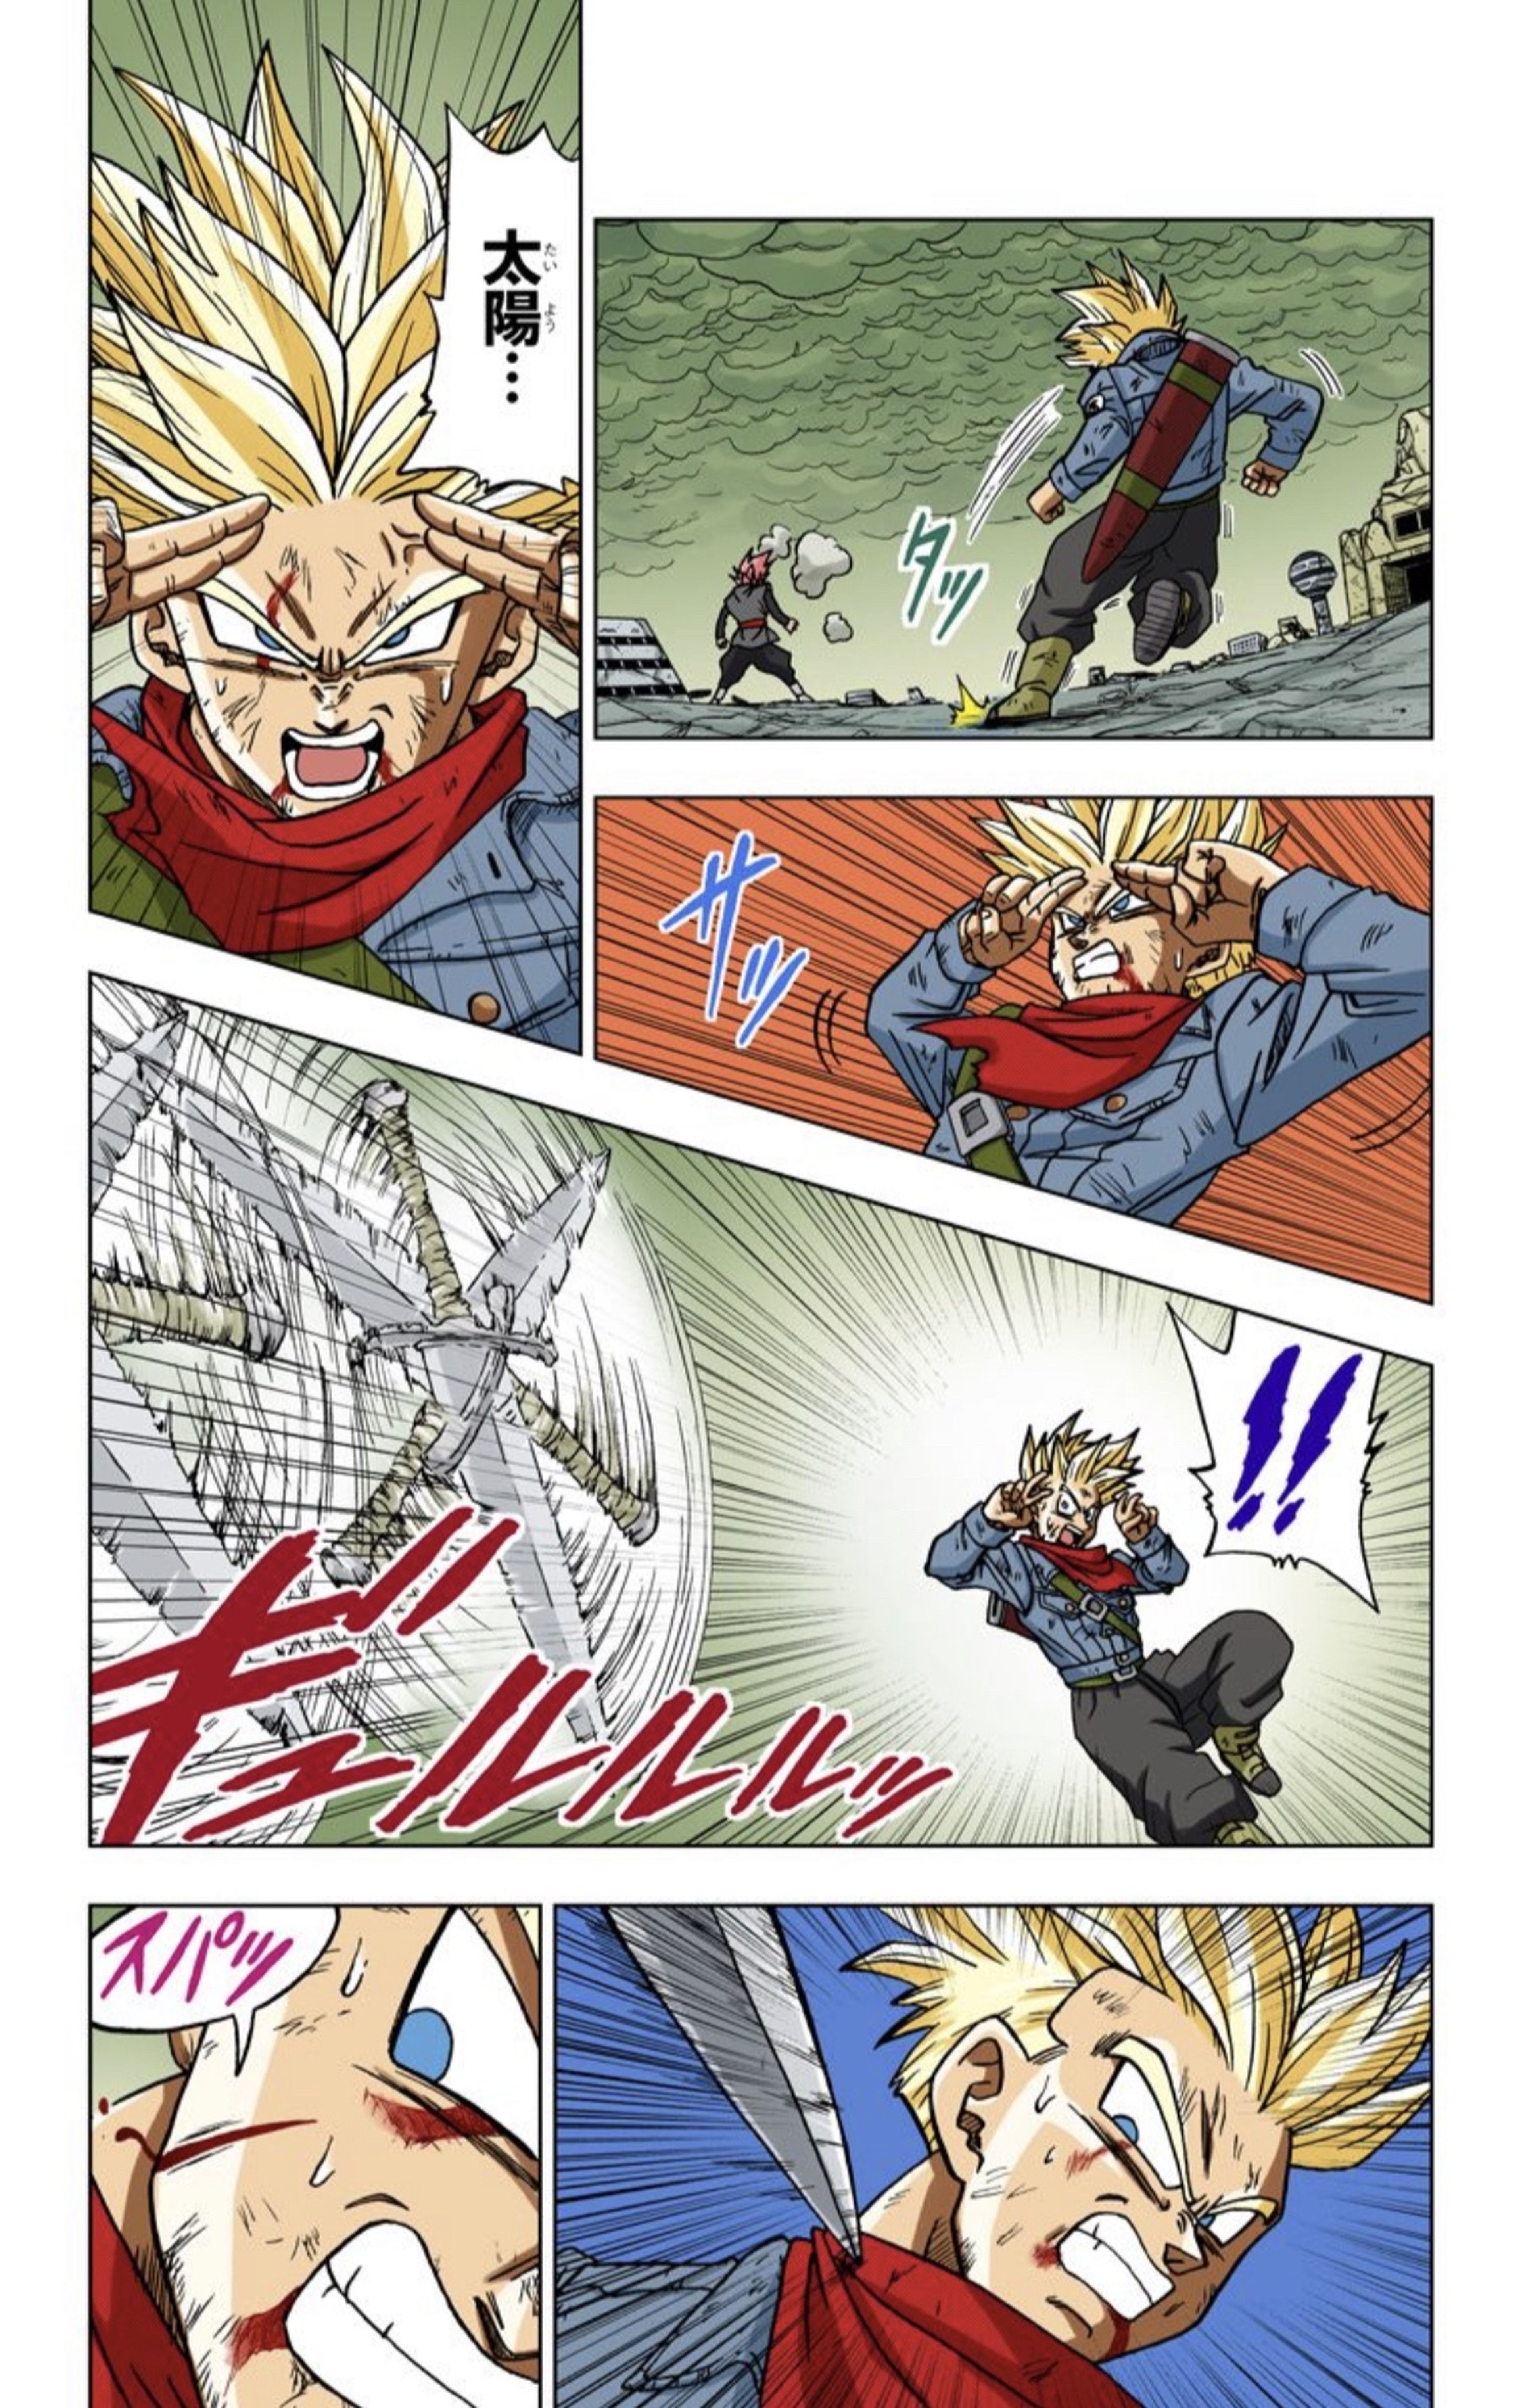 La sangre en el manga en color de Dragon Ball Super